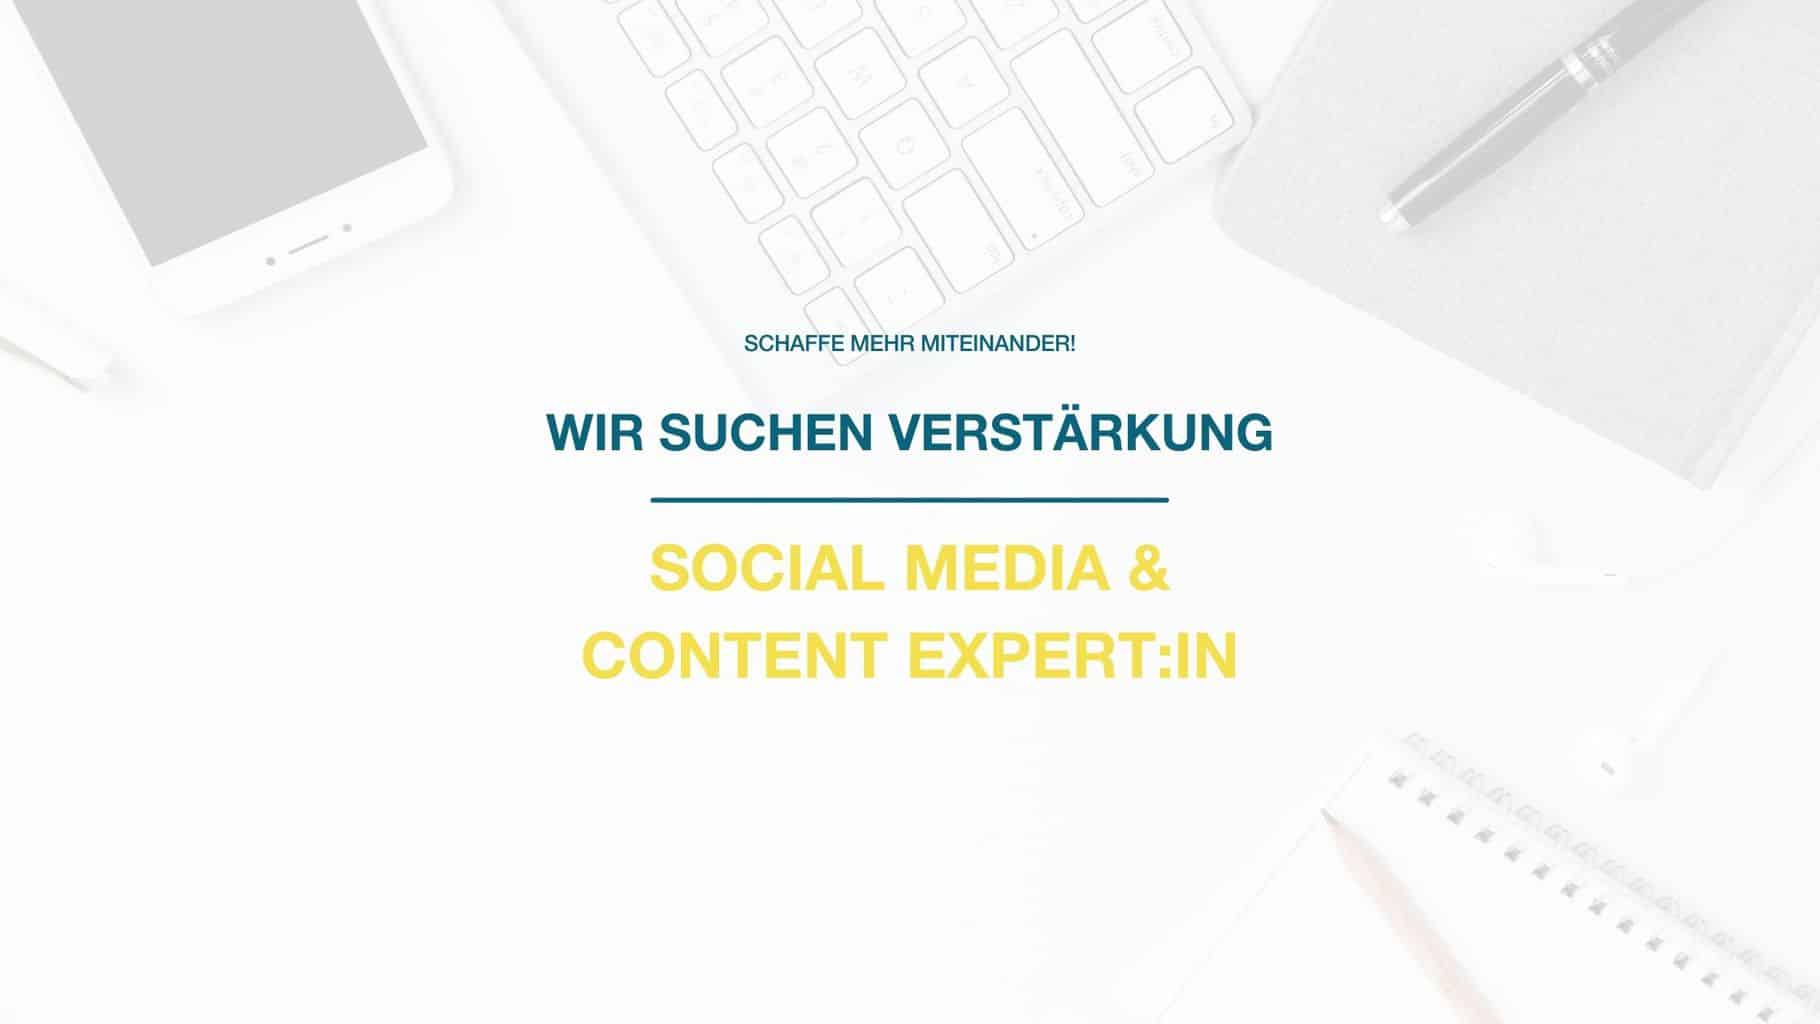 Job: Social Media & Content Expert:in